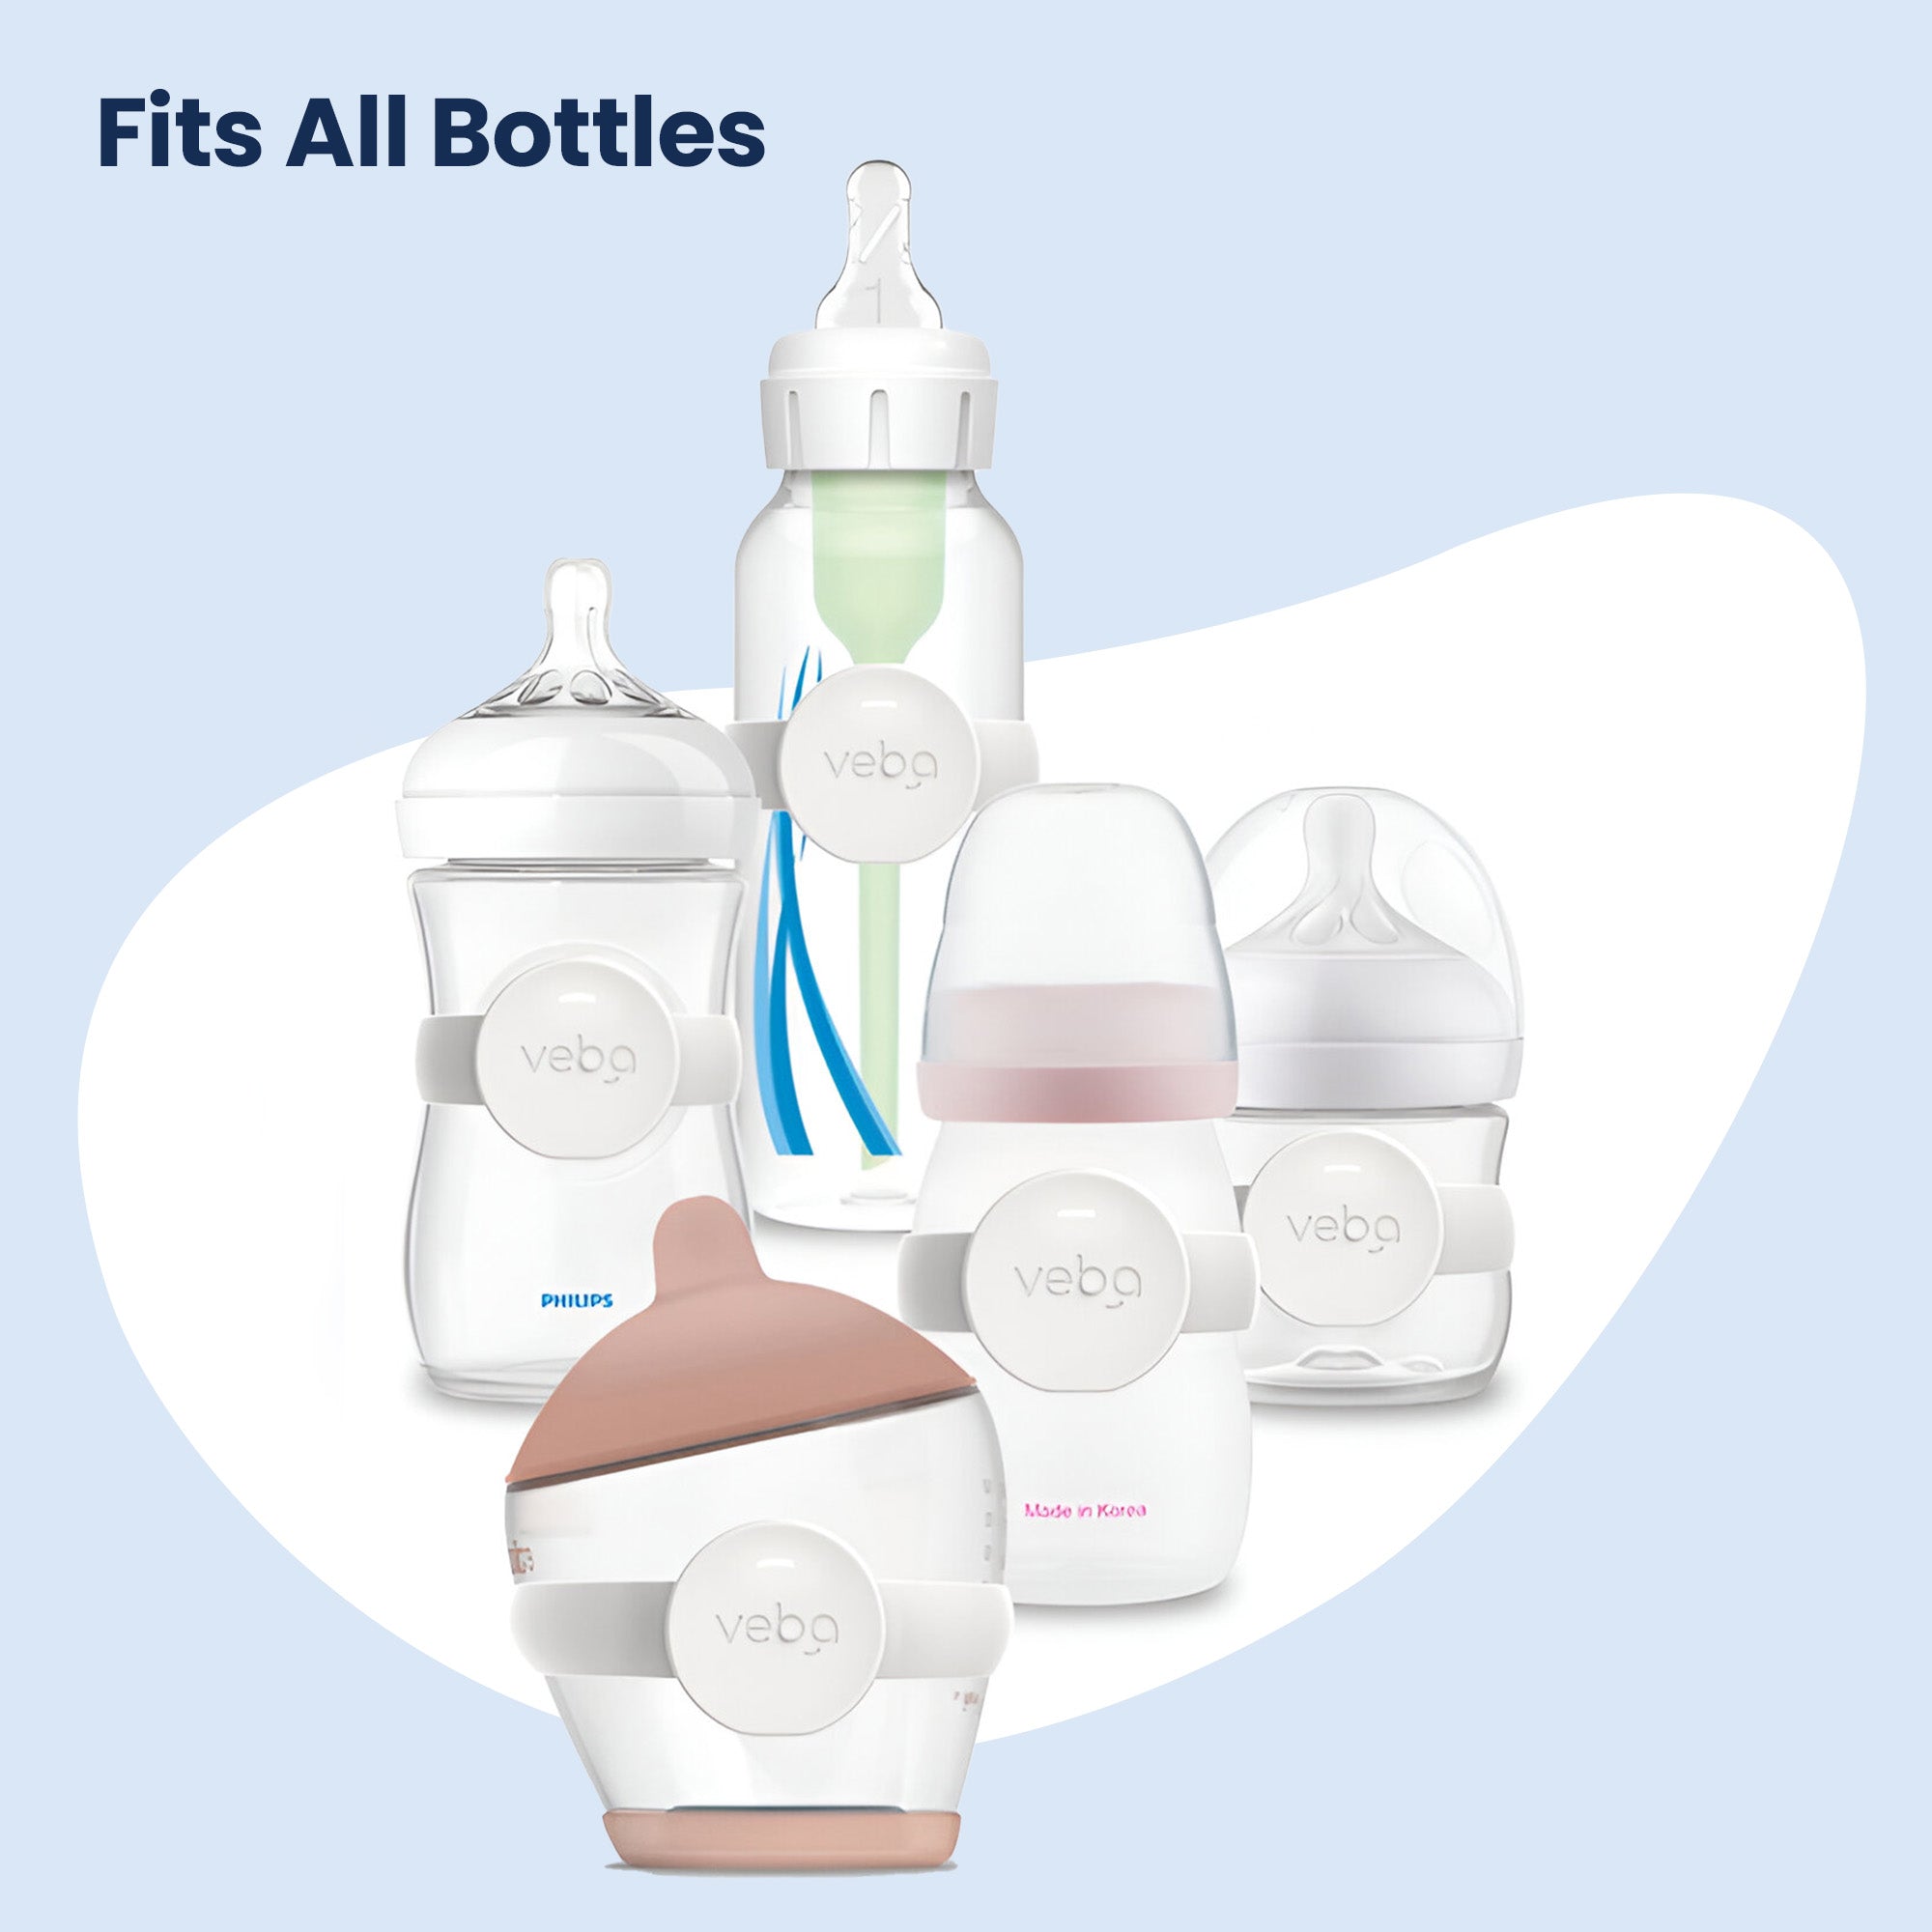 Veba - Smart Baby Bottle Monitor